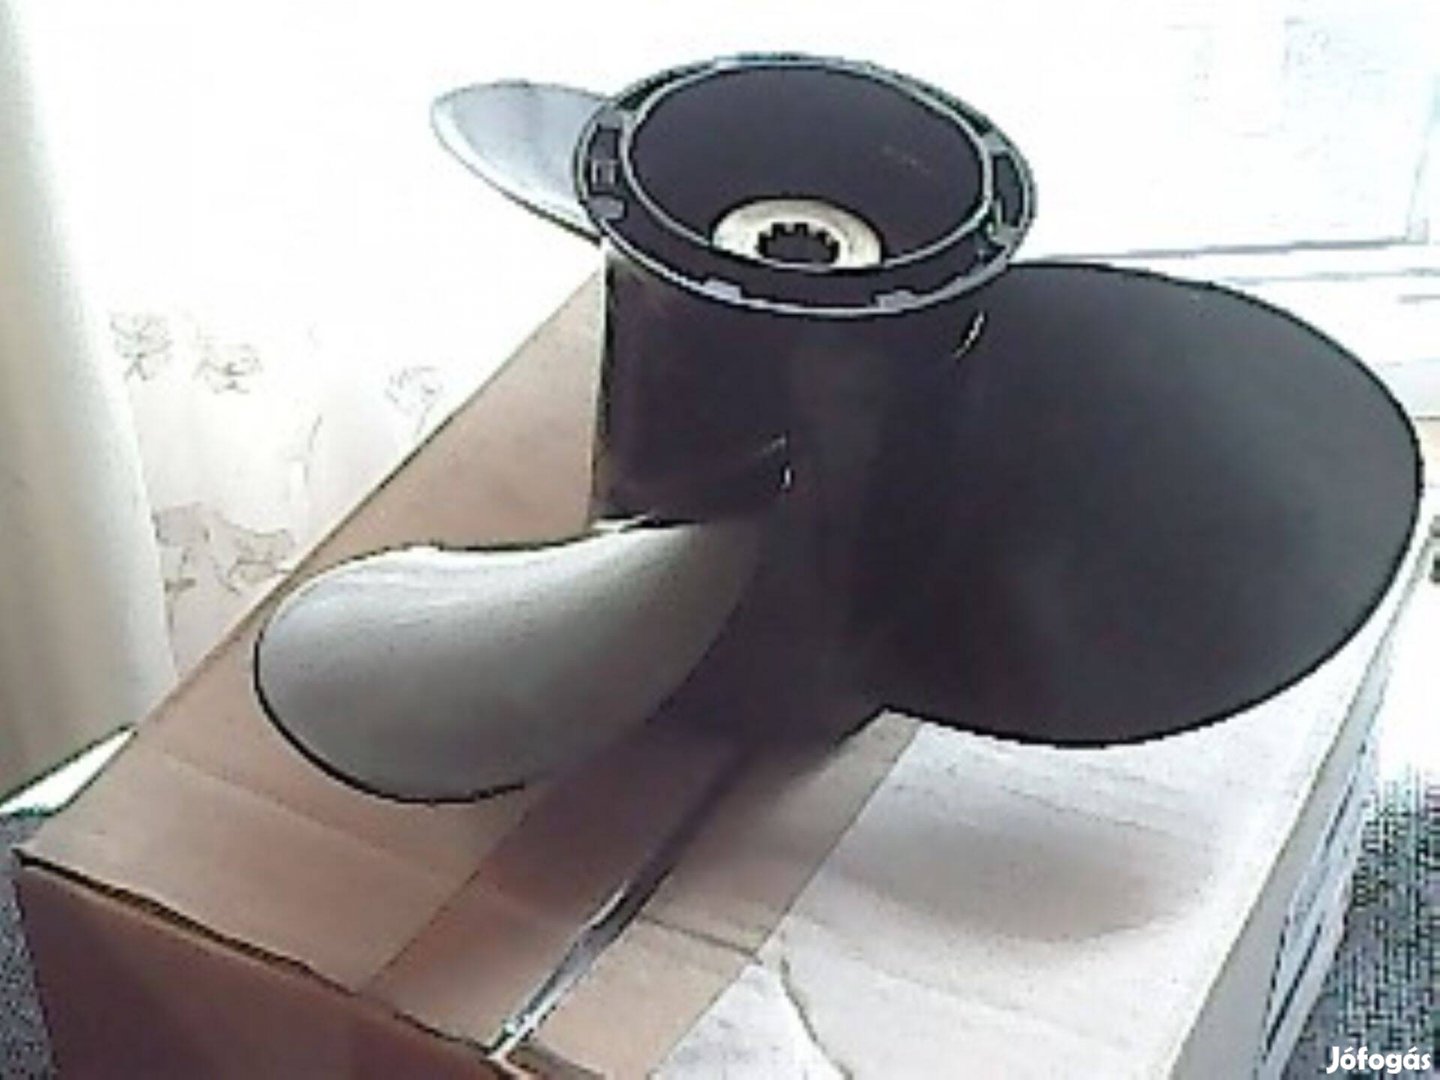 Suzuki propeller